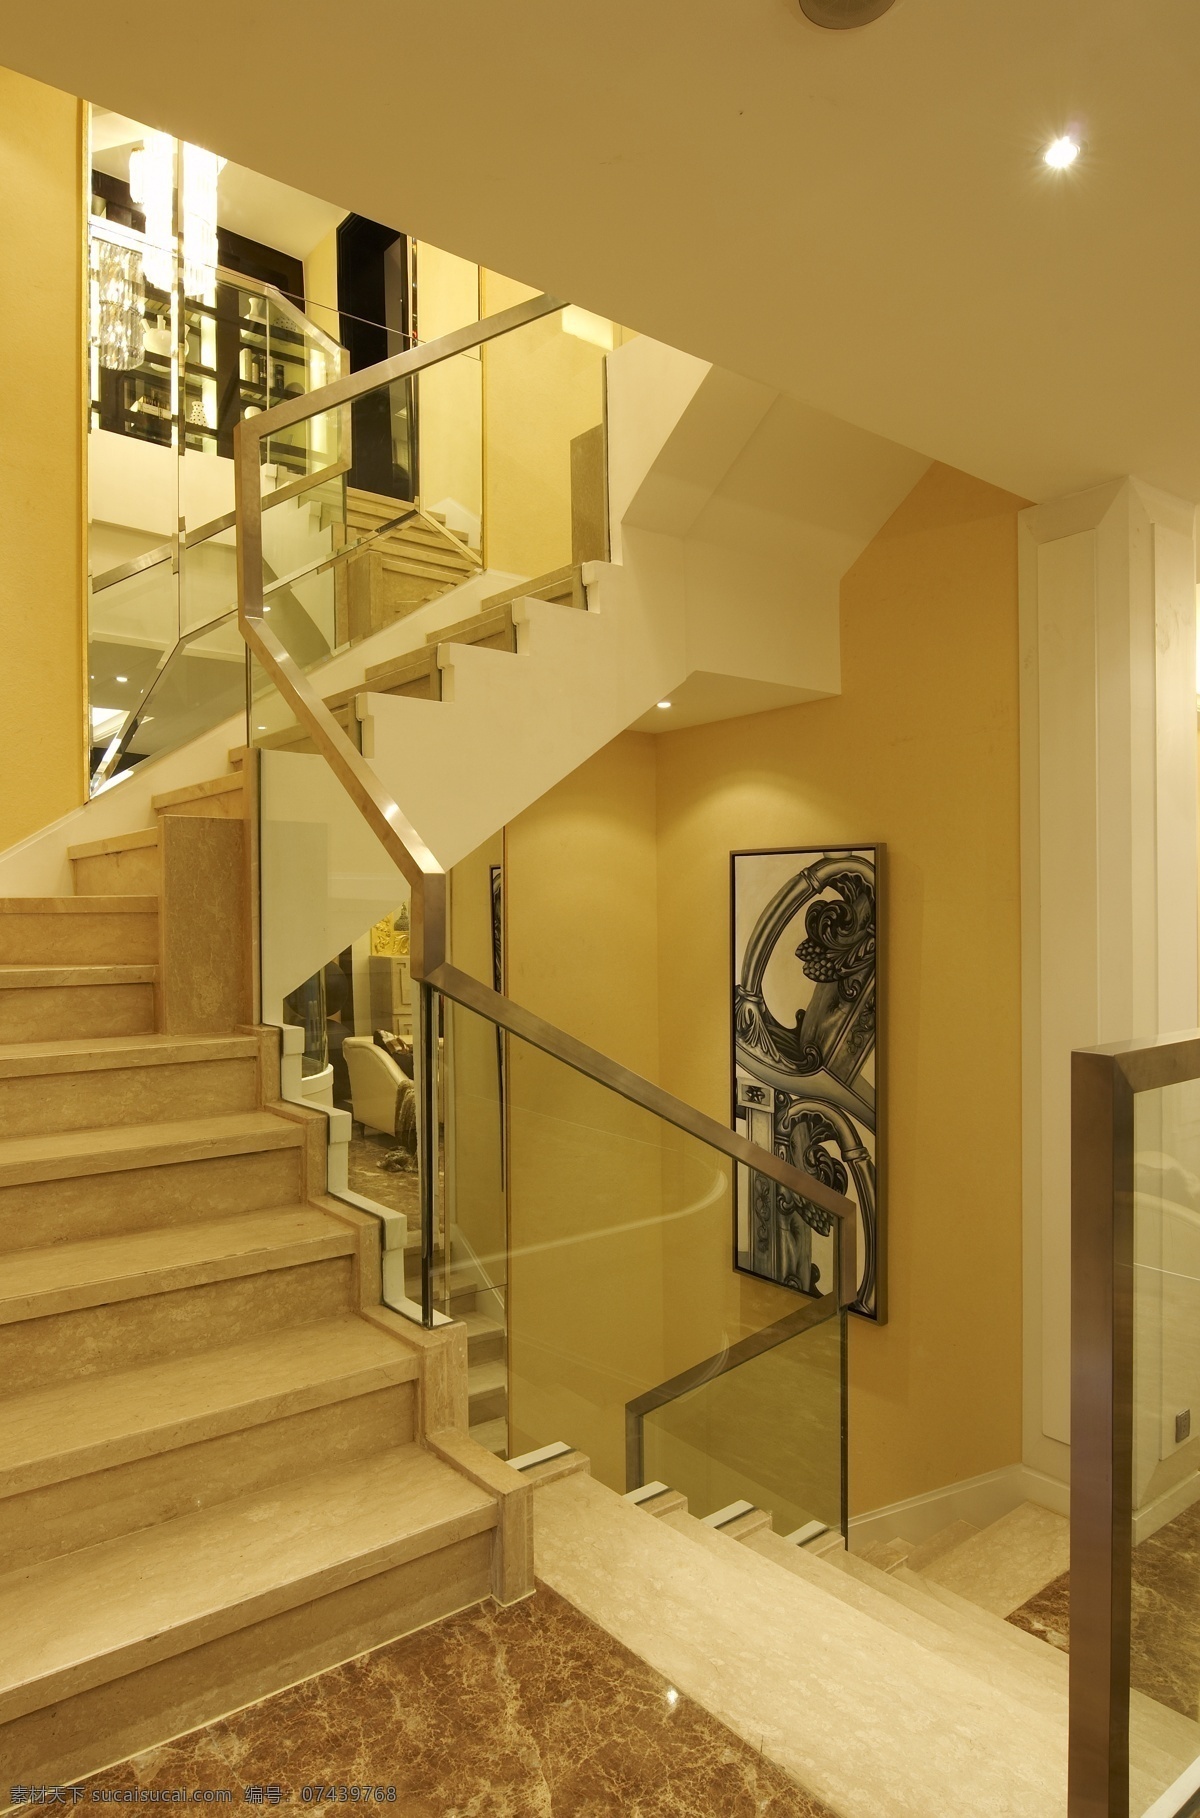 现代 美式 别墅 楼梯 效果图 室内设计 家装效果图 装修 时尚 奢华 设计素材 室内装修 装修实景图 家装设计 现代装修